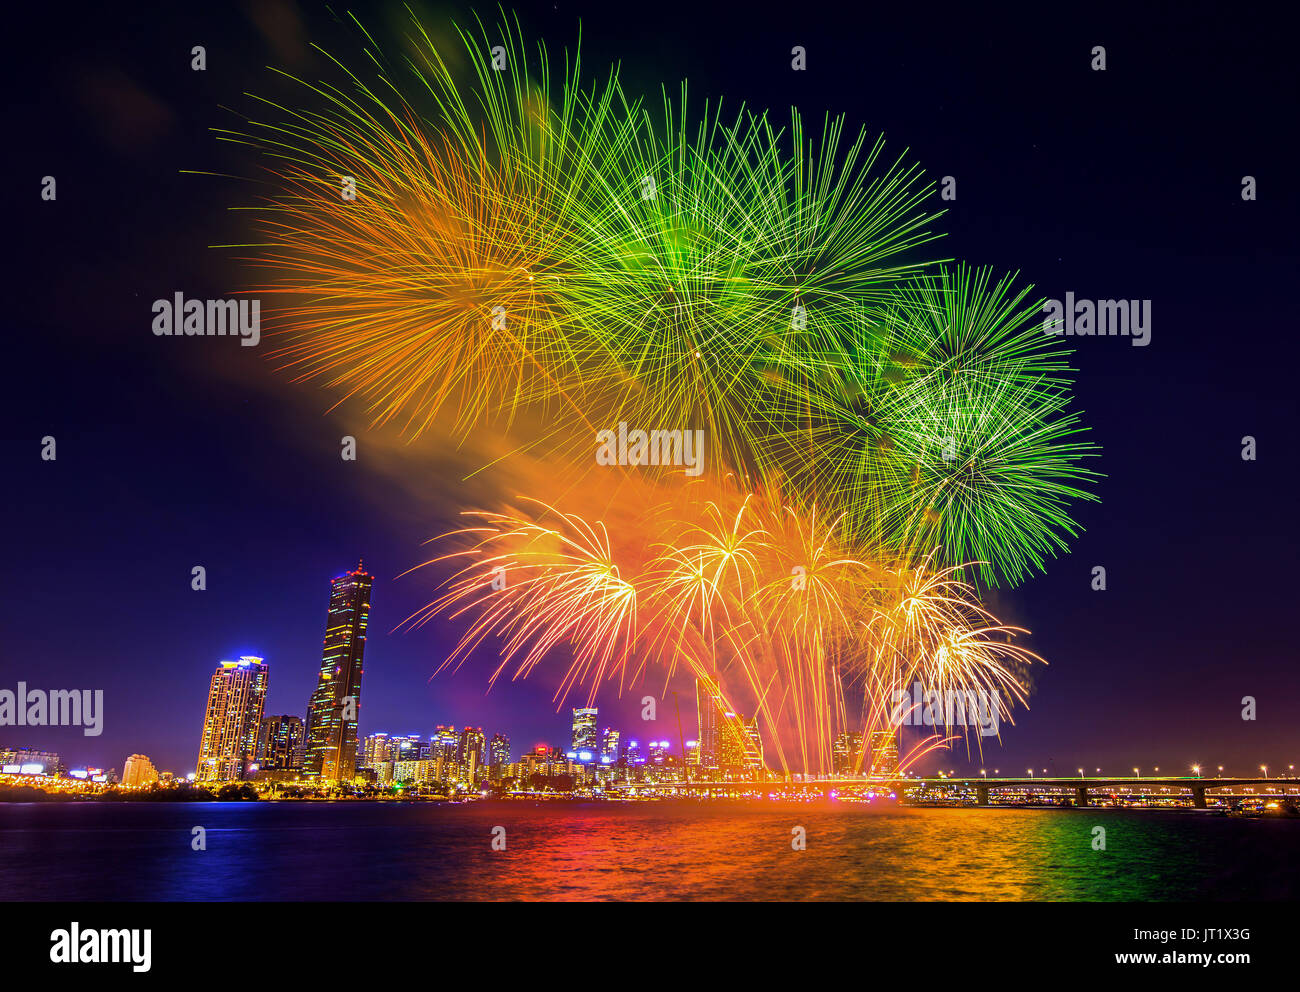 Seoul International Fireworks Festival in Korea. Stock Photo